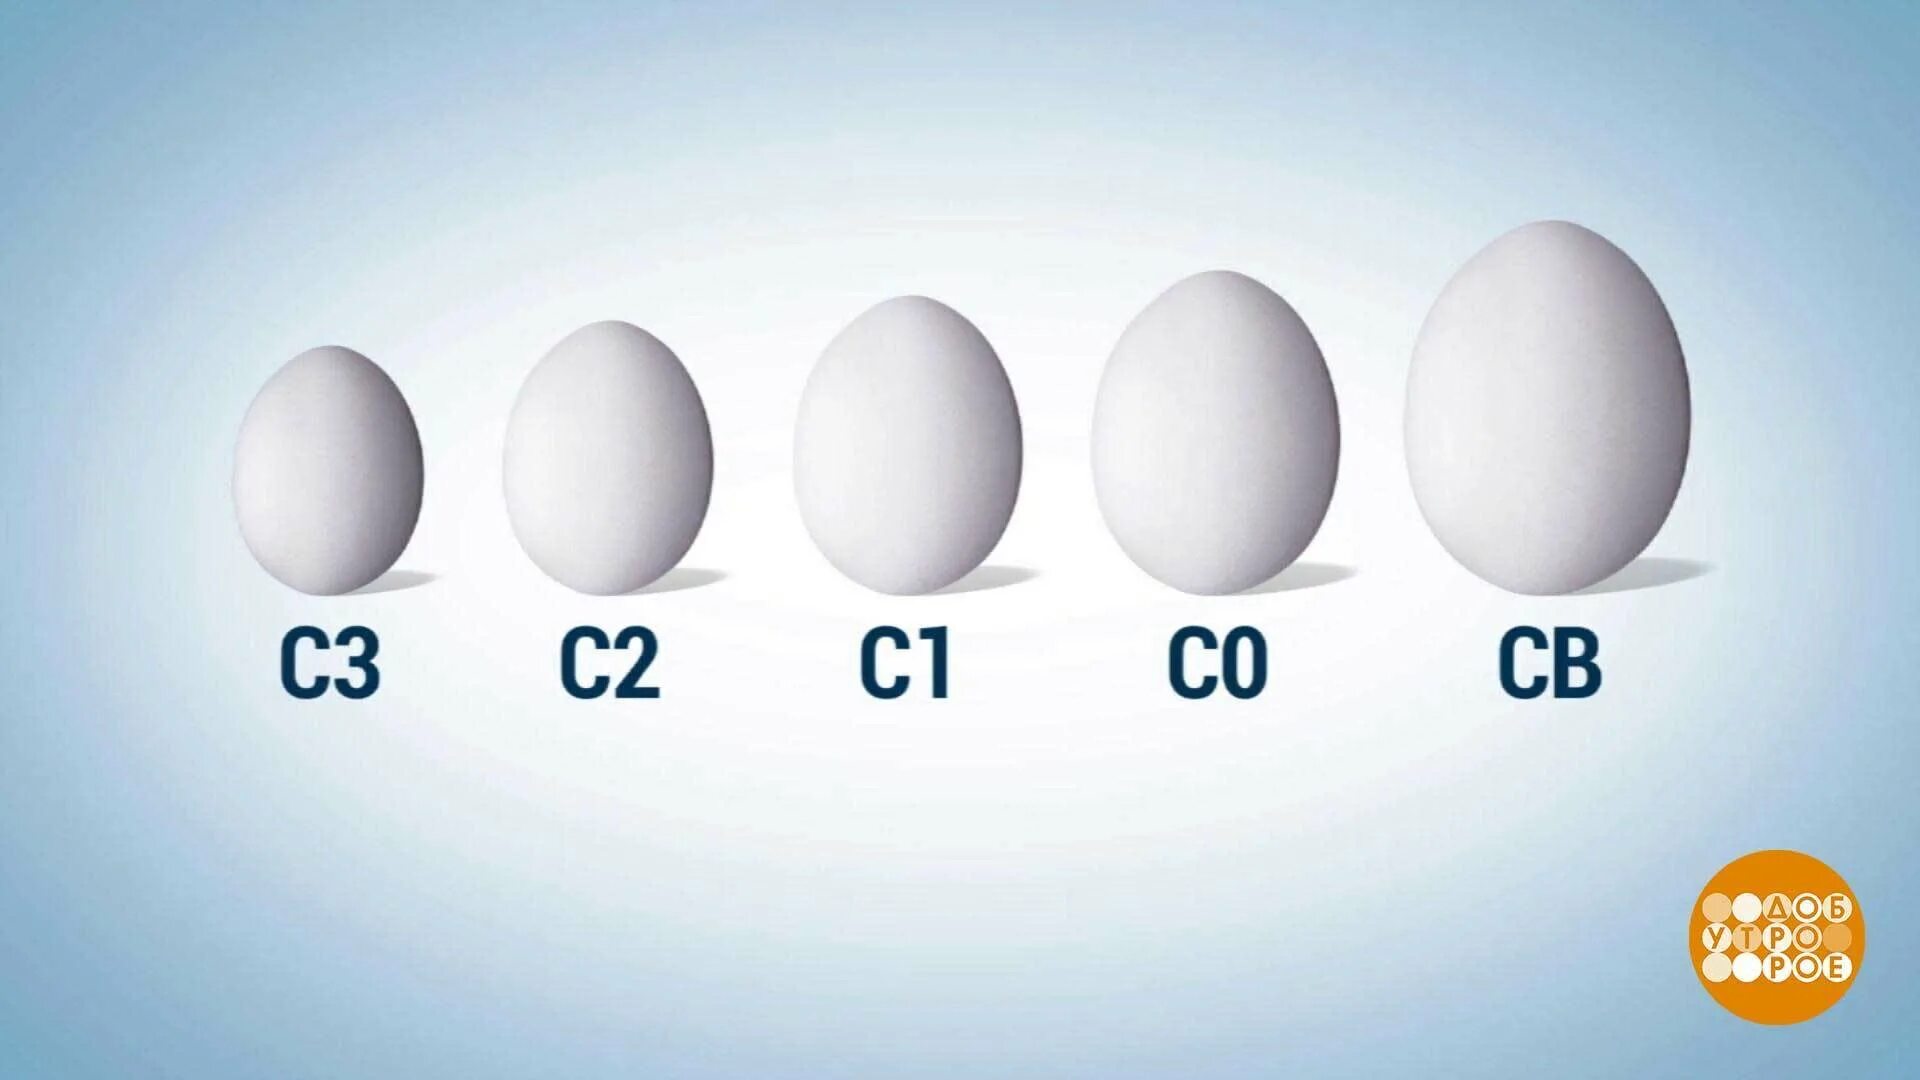 Маркировка яиц. Маркирование яиц. Категории яиц куриных. Обозначение яиц. Яйца с0 или с2